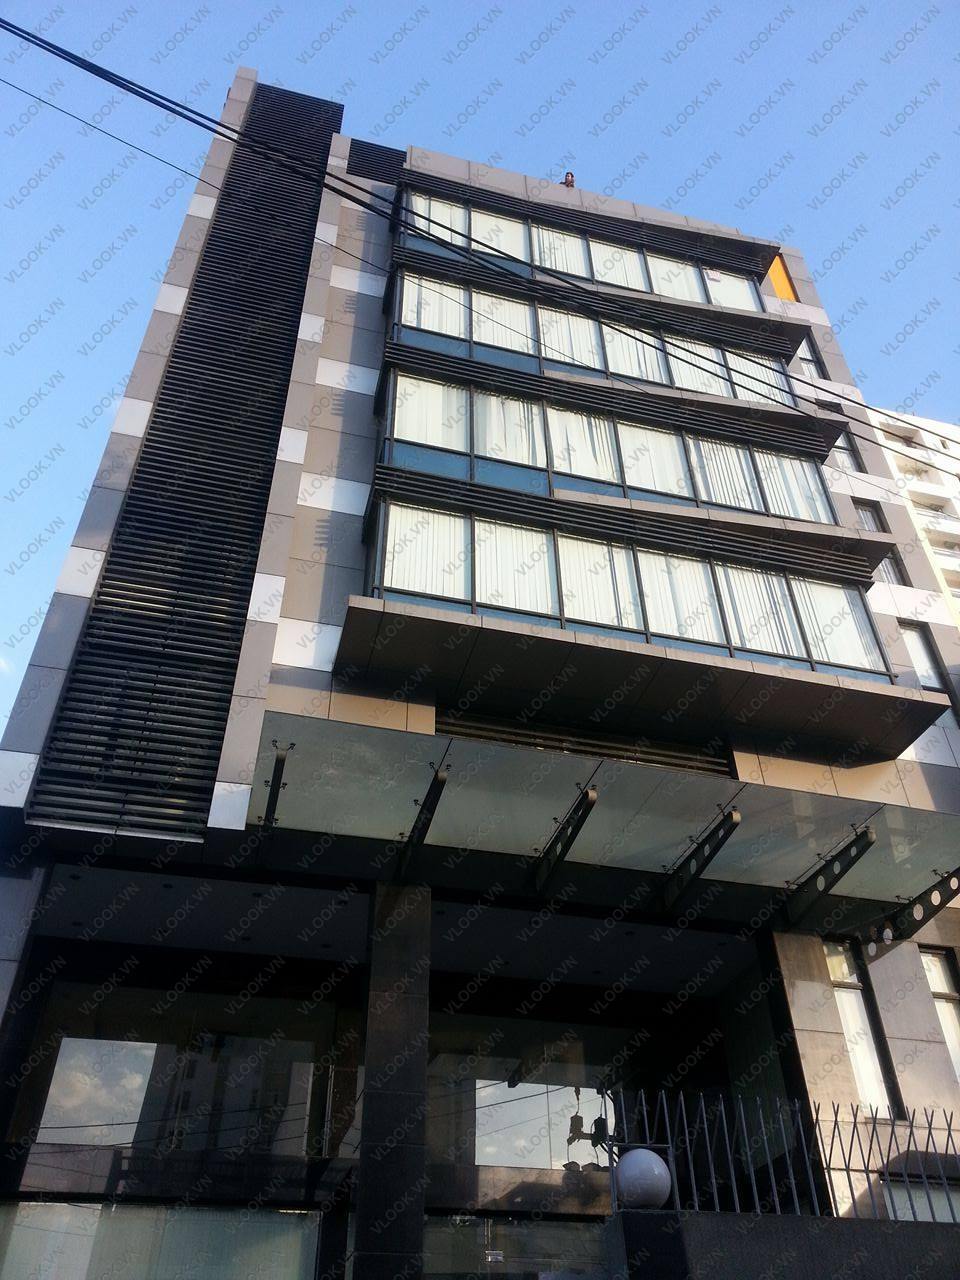 Tòa nhà EPM TOWER đường Ung Văn Khiêm - Văn phòng cho thuê quận Bình Thạnh - VLOOK.VN